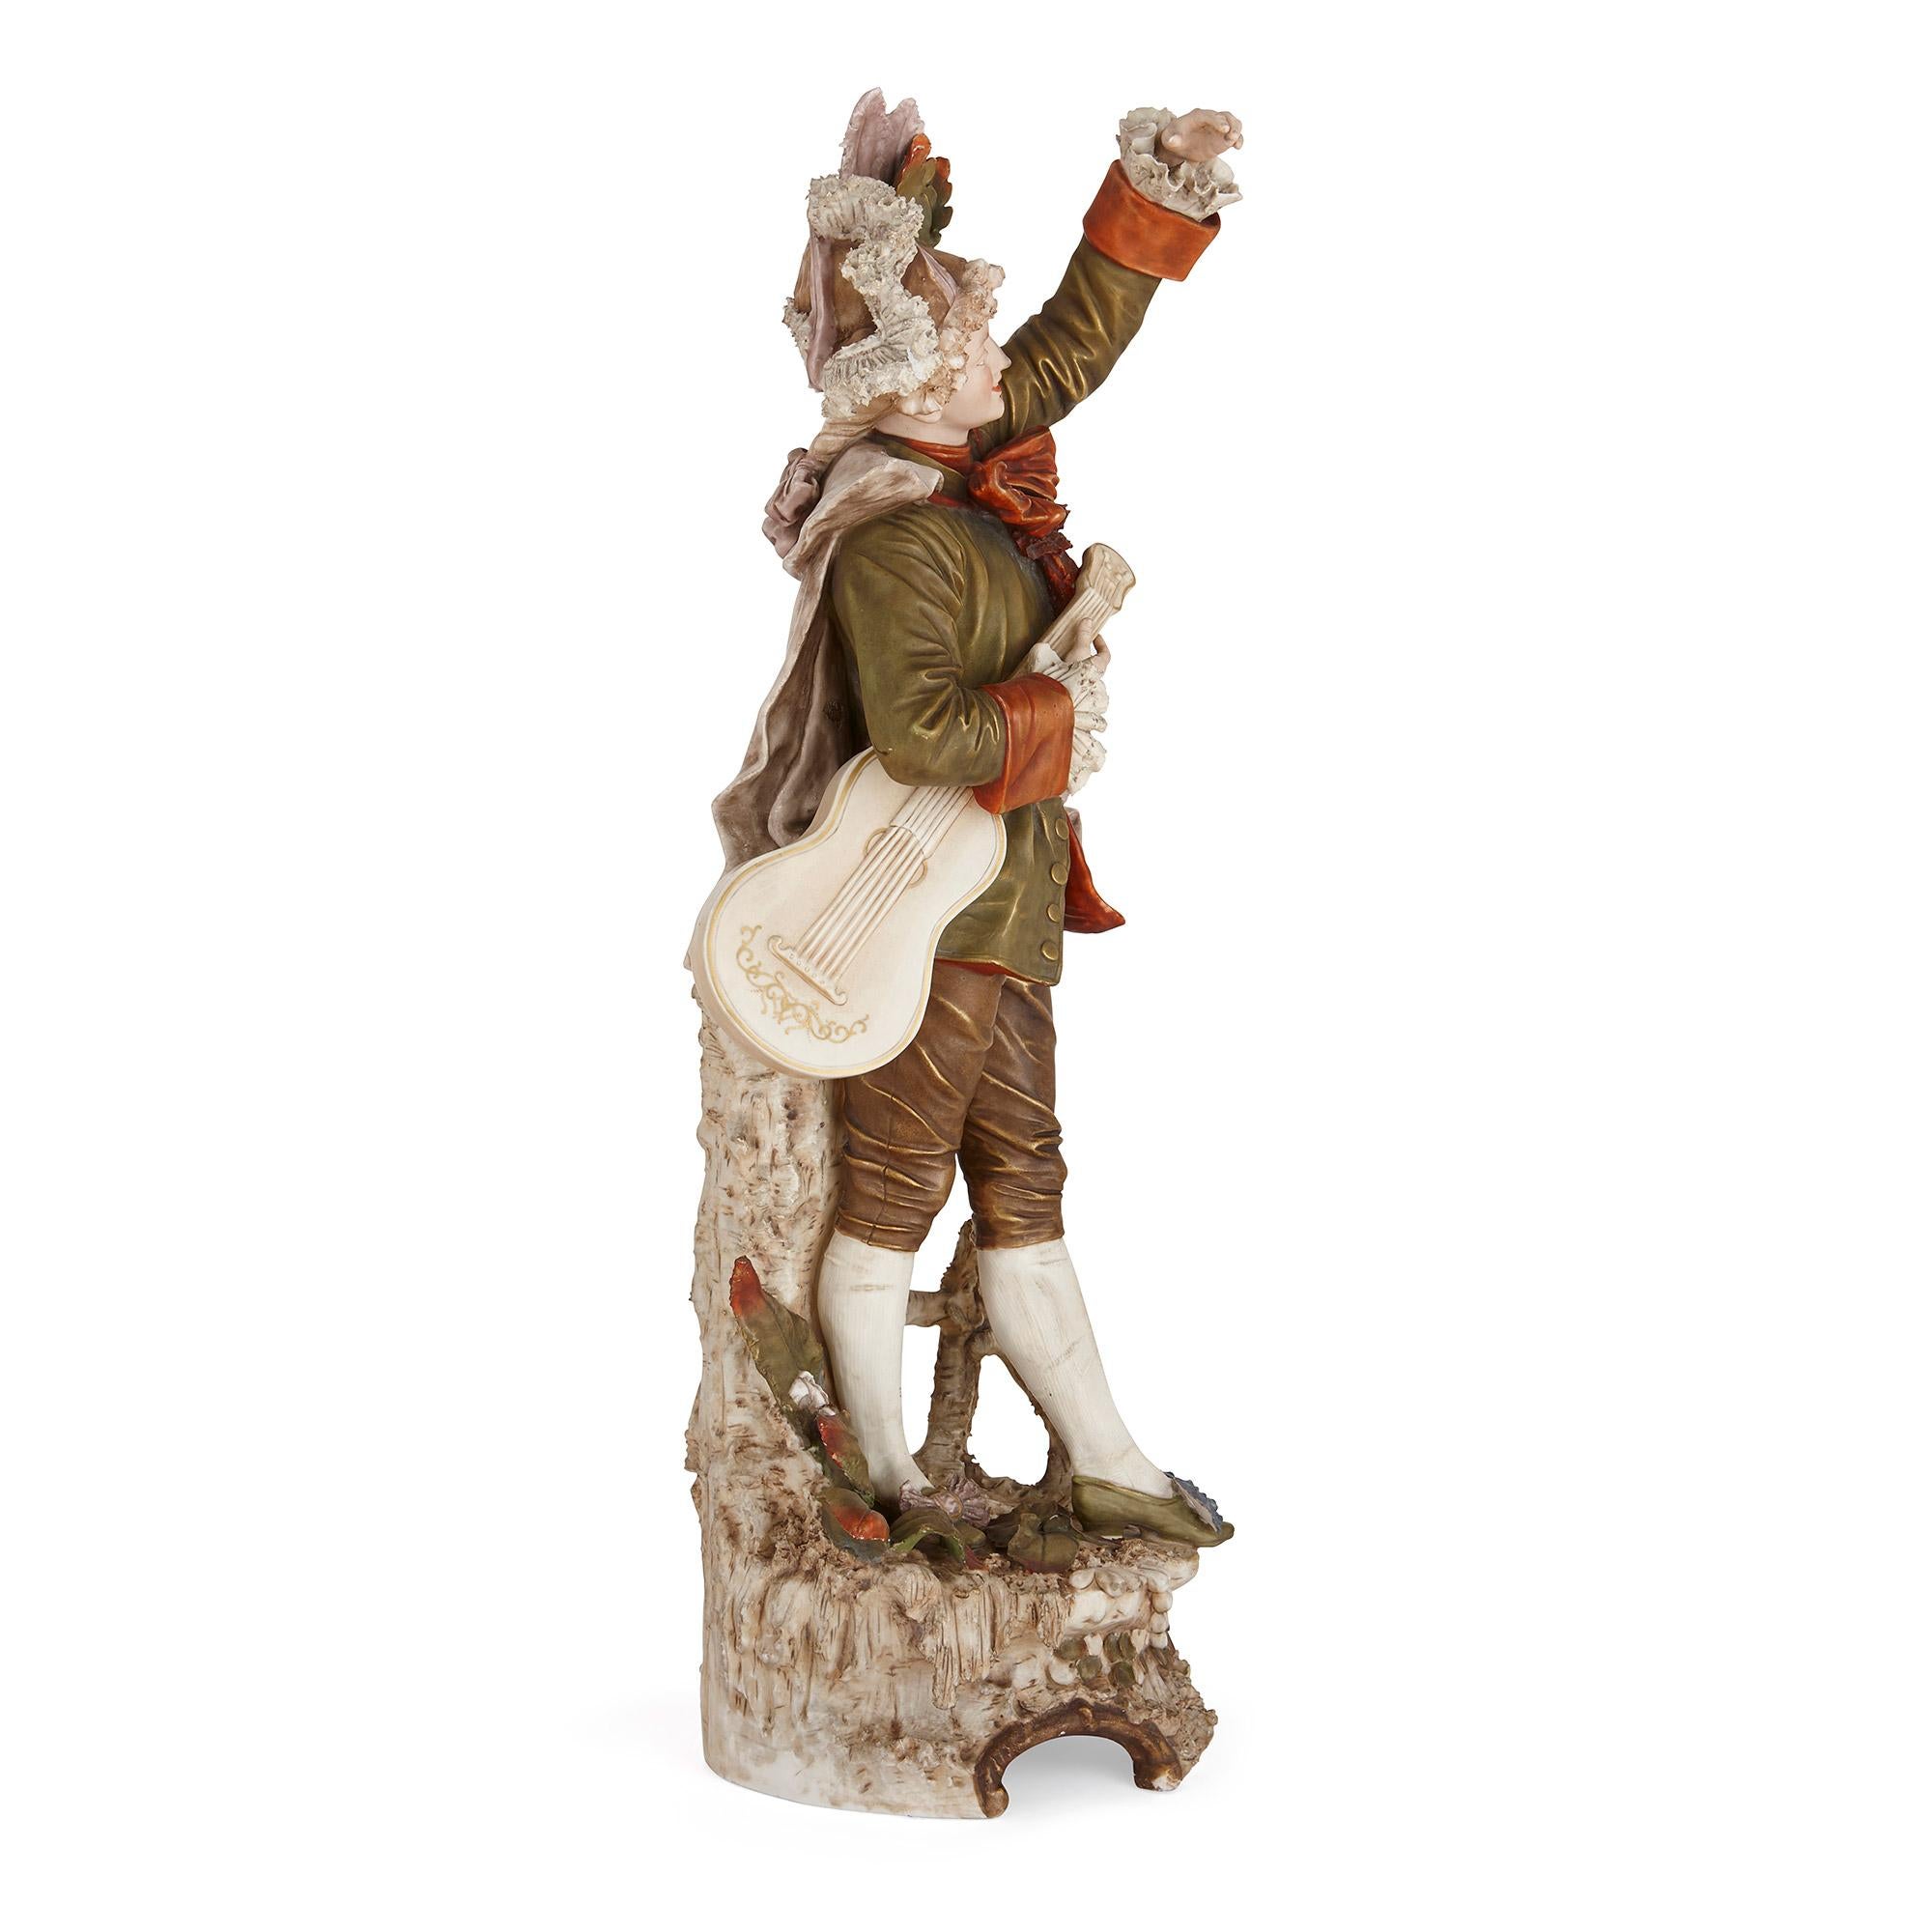 Figurine de musicien en porcelaine de Bohème Royal Dux
Bohème, fin du 19e siècle
Hauteur 80cm, largeur 27cm, profondeur 27cm

Cette charmante figurine en porcelaine représente un musicien de style rococo. La figurine est signée Royal Dux, qui